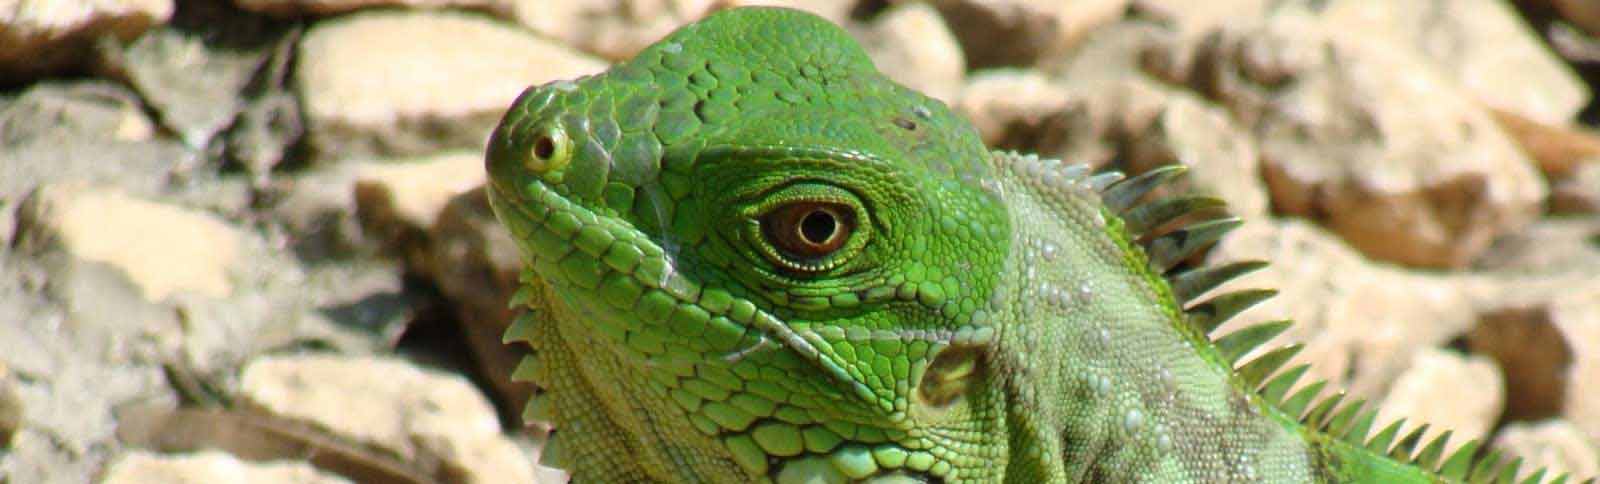 De groene leguaan - Iguana Iguana